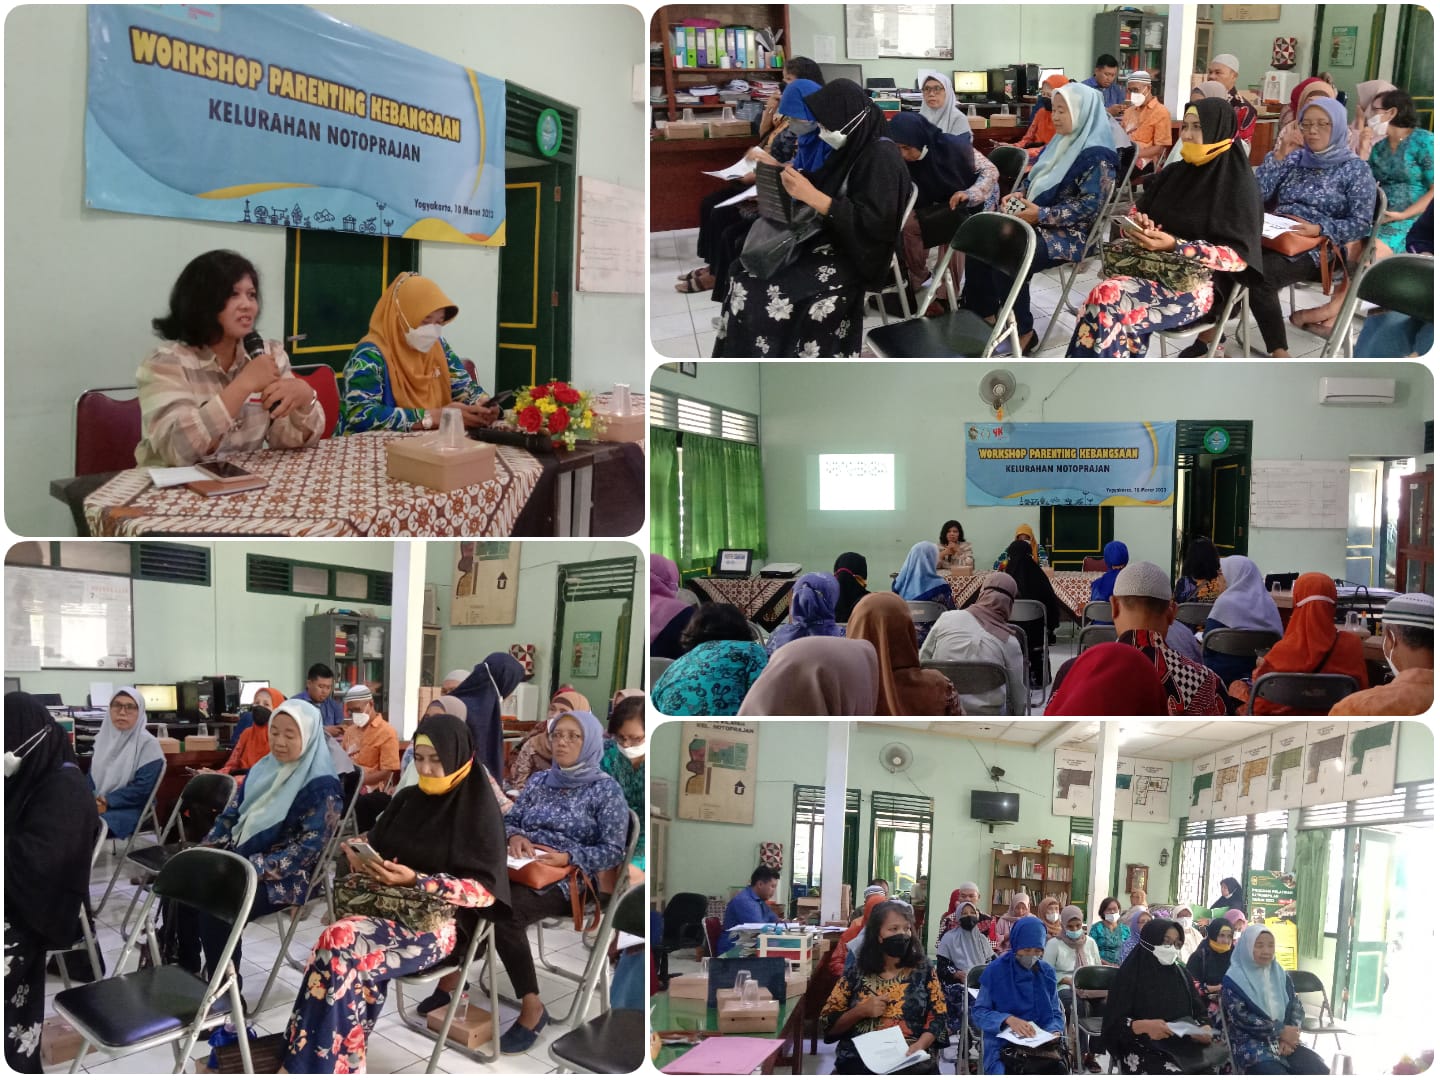 Workshop Parenting Kebangsaan Kelurahan Notoprajan